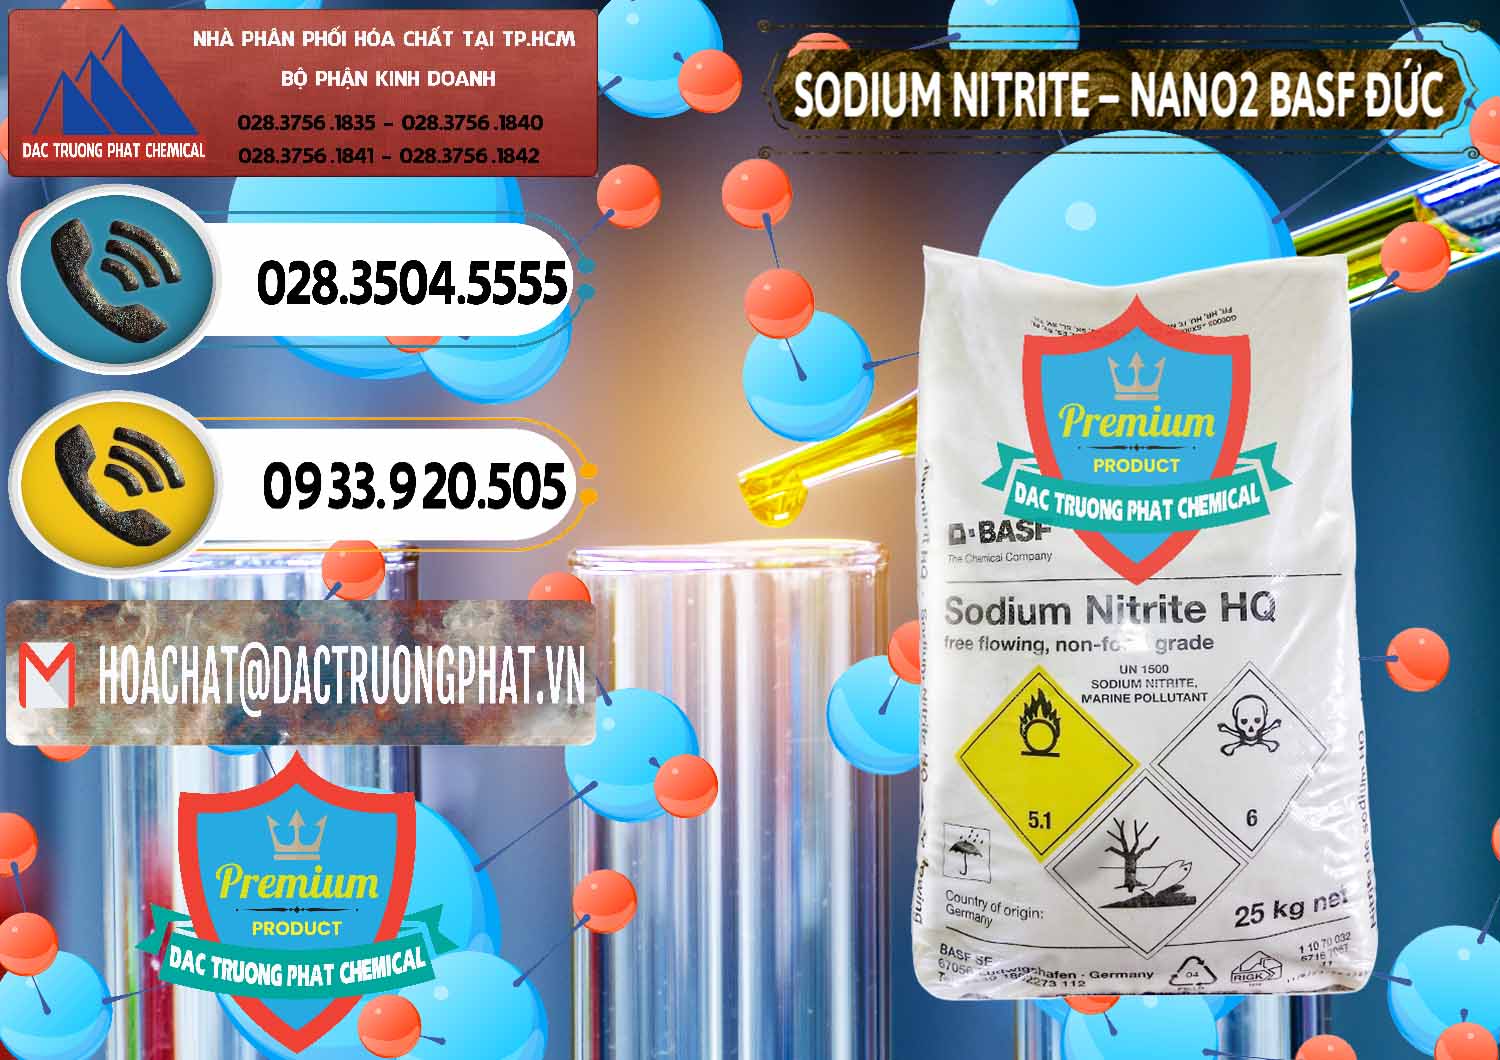 Công ty cung cấp & bán Sodium Nitrite - NANO2 Đức BASF Germany - 0148 - Nơi nhập khẩu ( cung cấp ) hóa chất tại TP.HCM - hoachatdetnhuom.vn